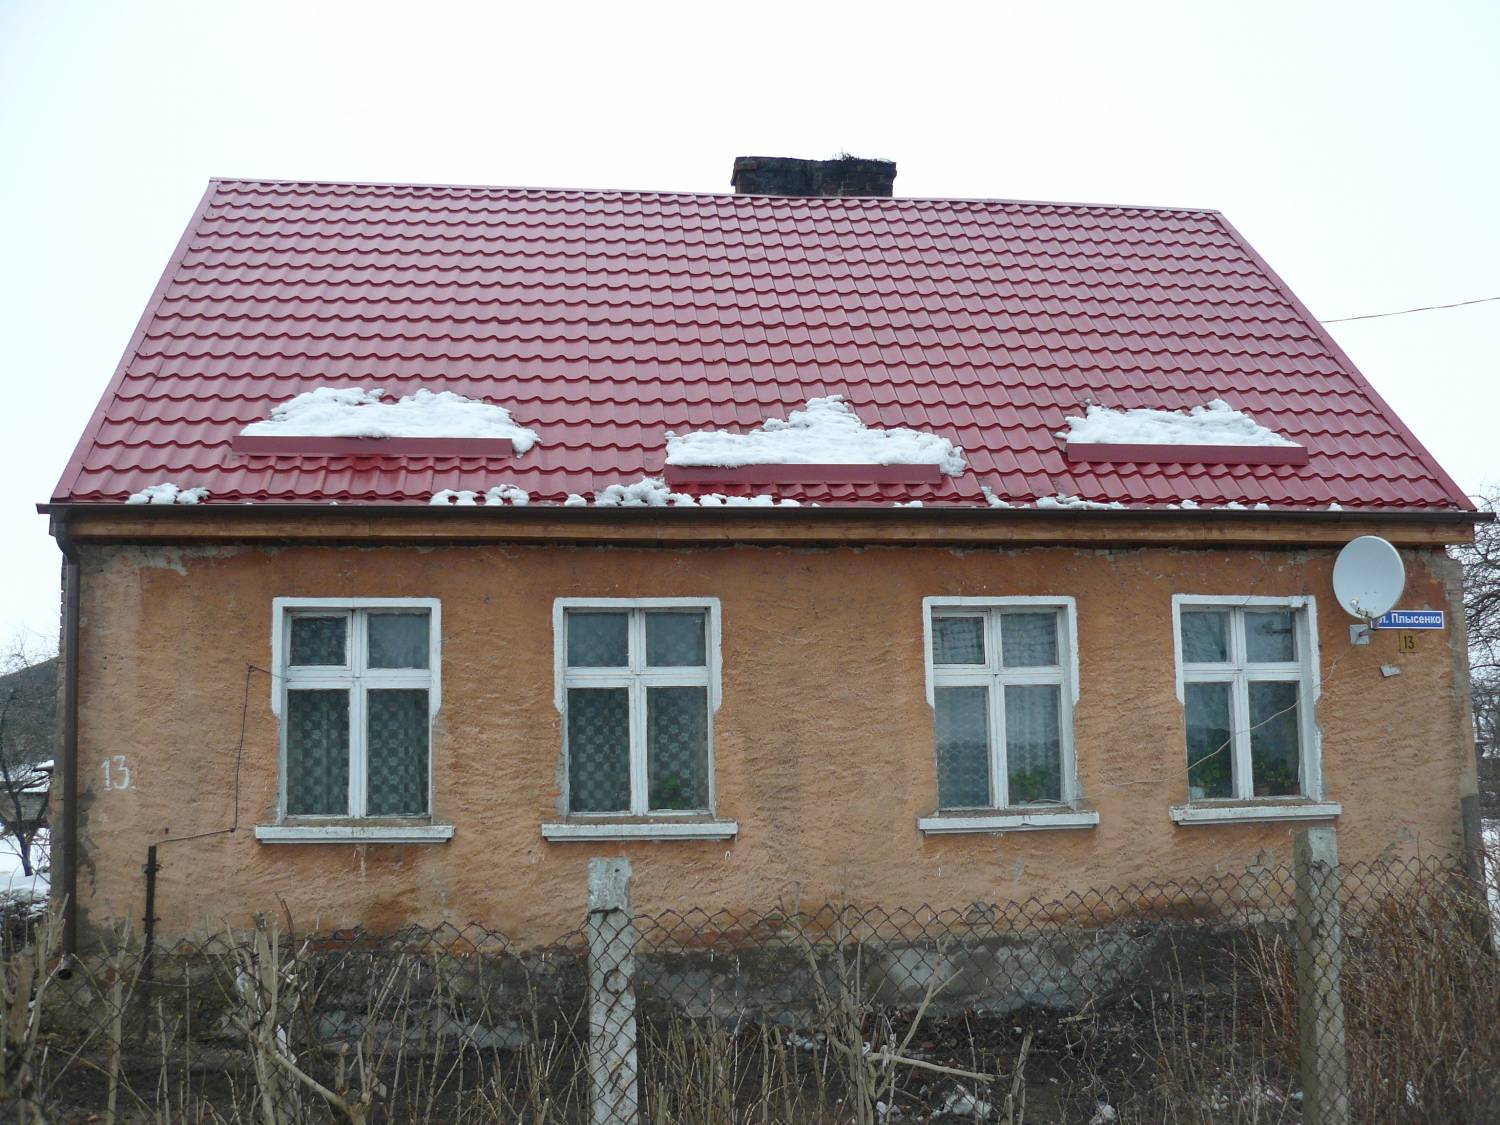 Окончен ремонт крыши дома по улице Плысенко,13 - 26 Марта 2011 .